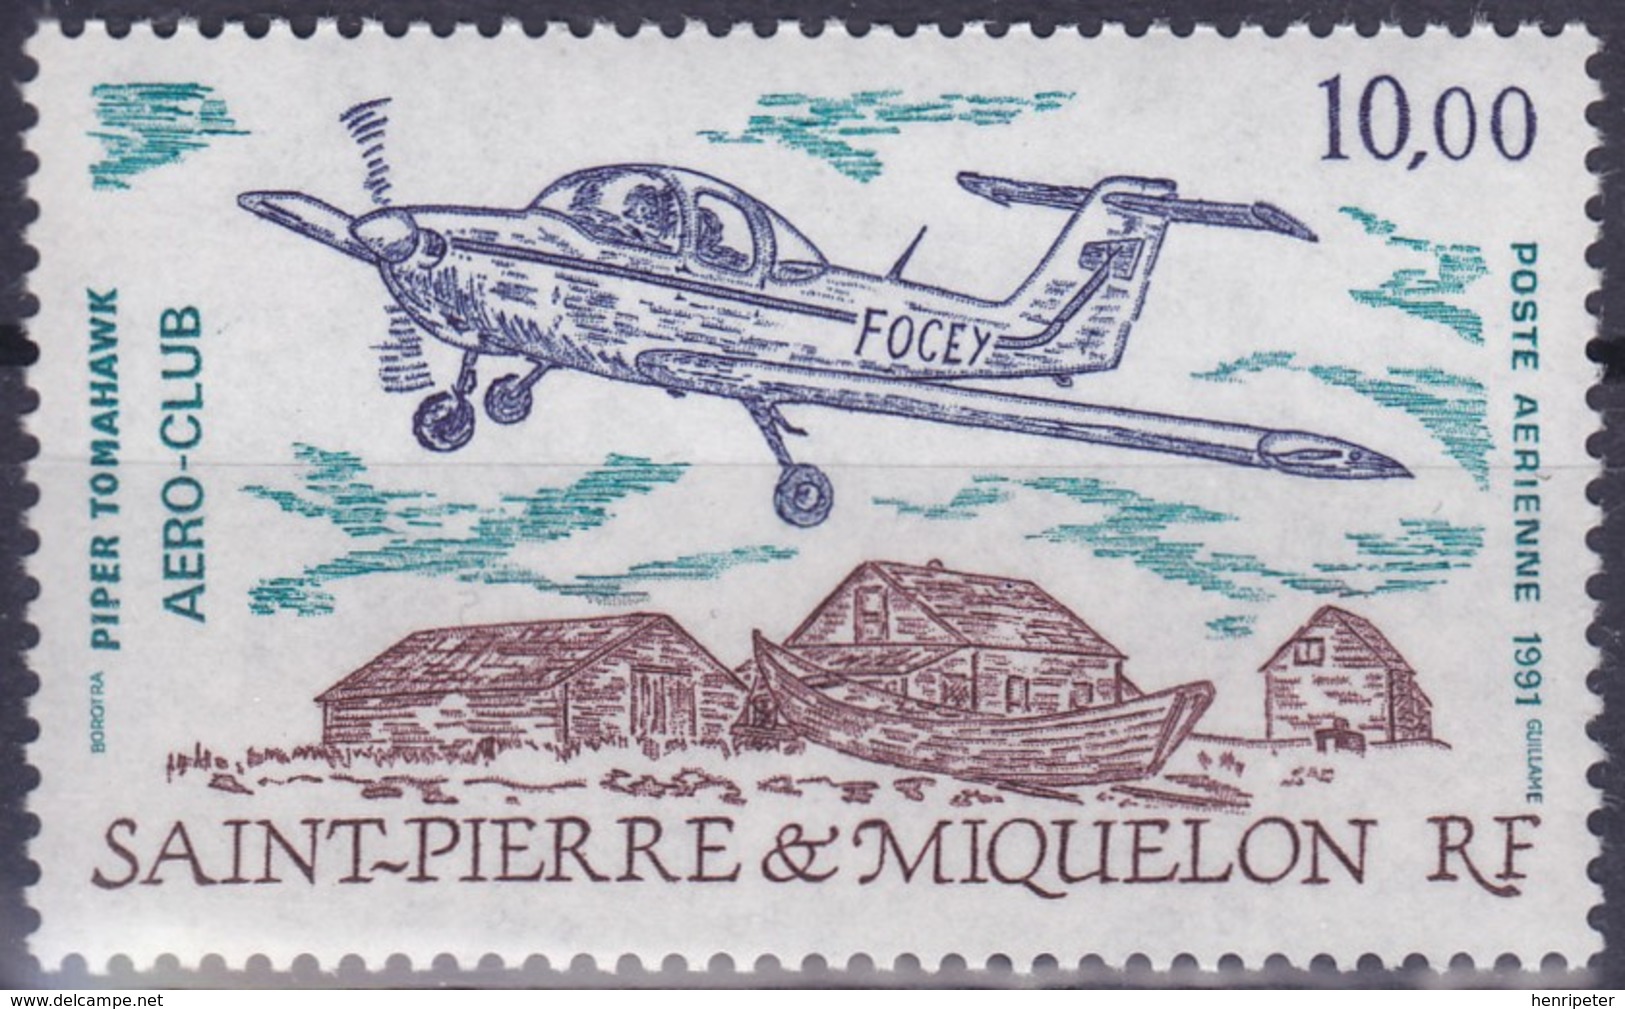 Timbre Aérien Neuf** - Aéro-Club De Saint-Pierre Piper Tomahawk - N° 70 (Yvert) - Saint-Pierre Et Miquelon 1991 - Neufs